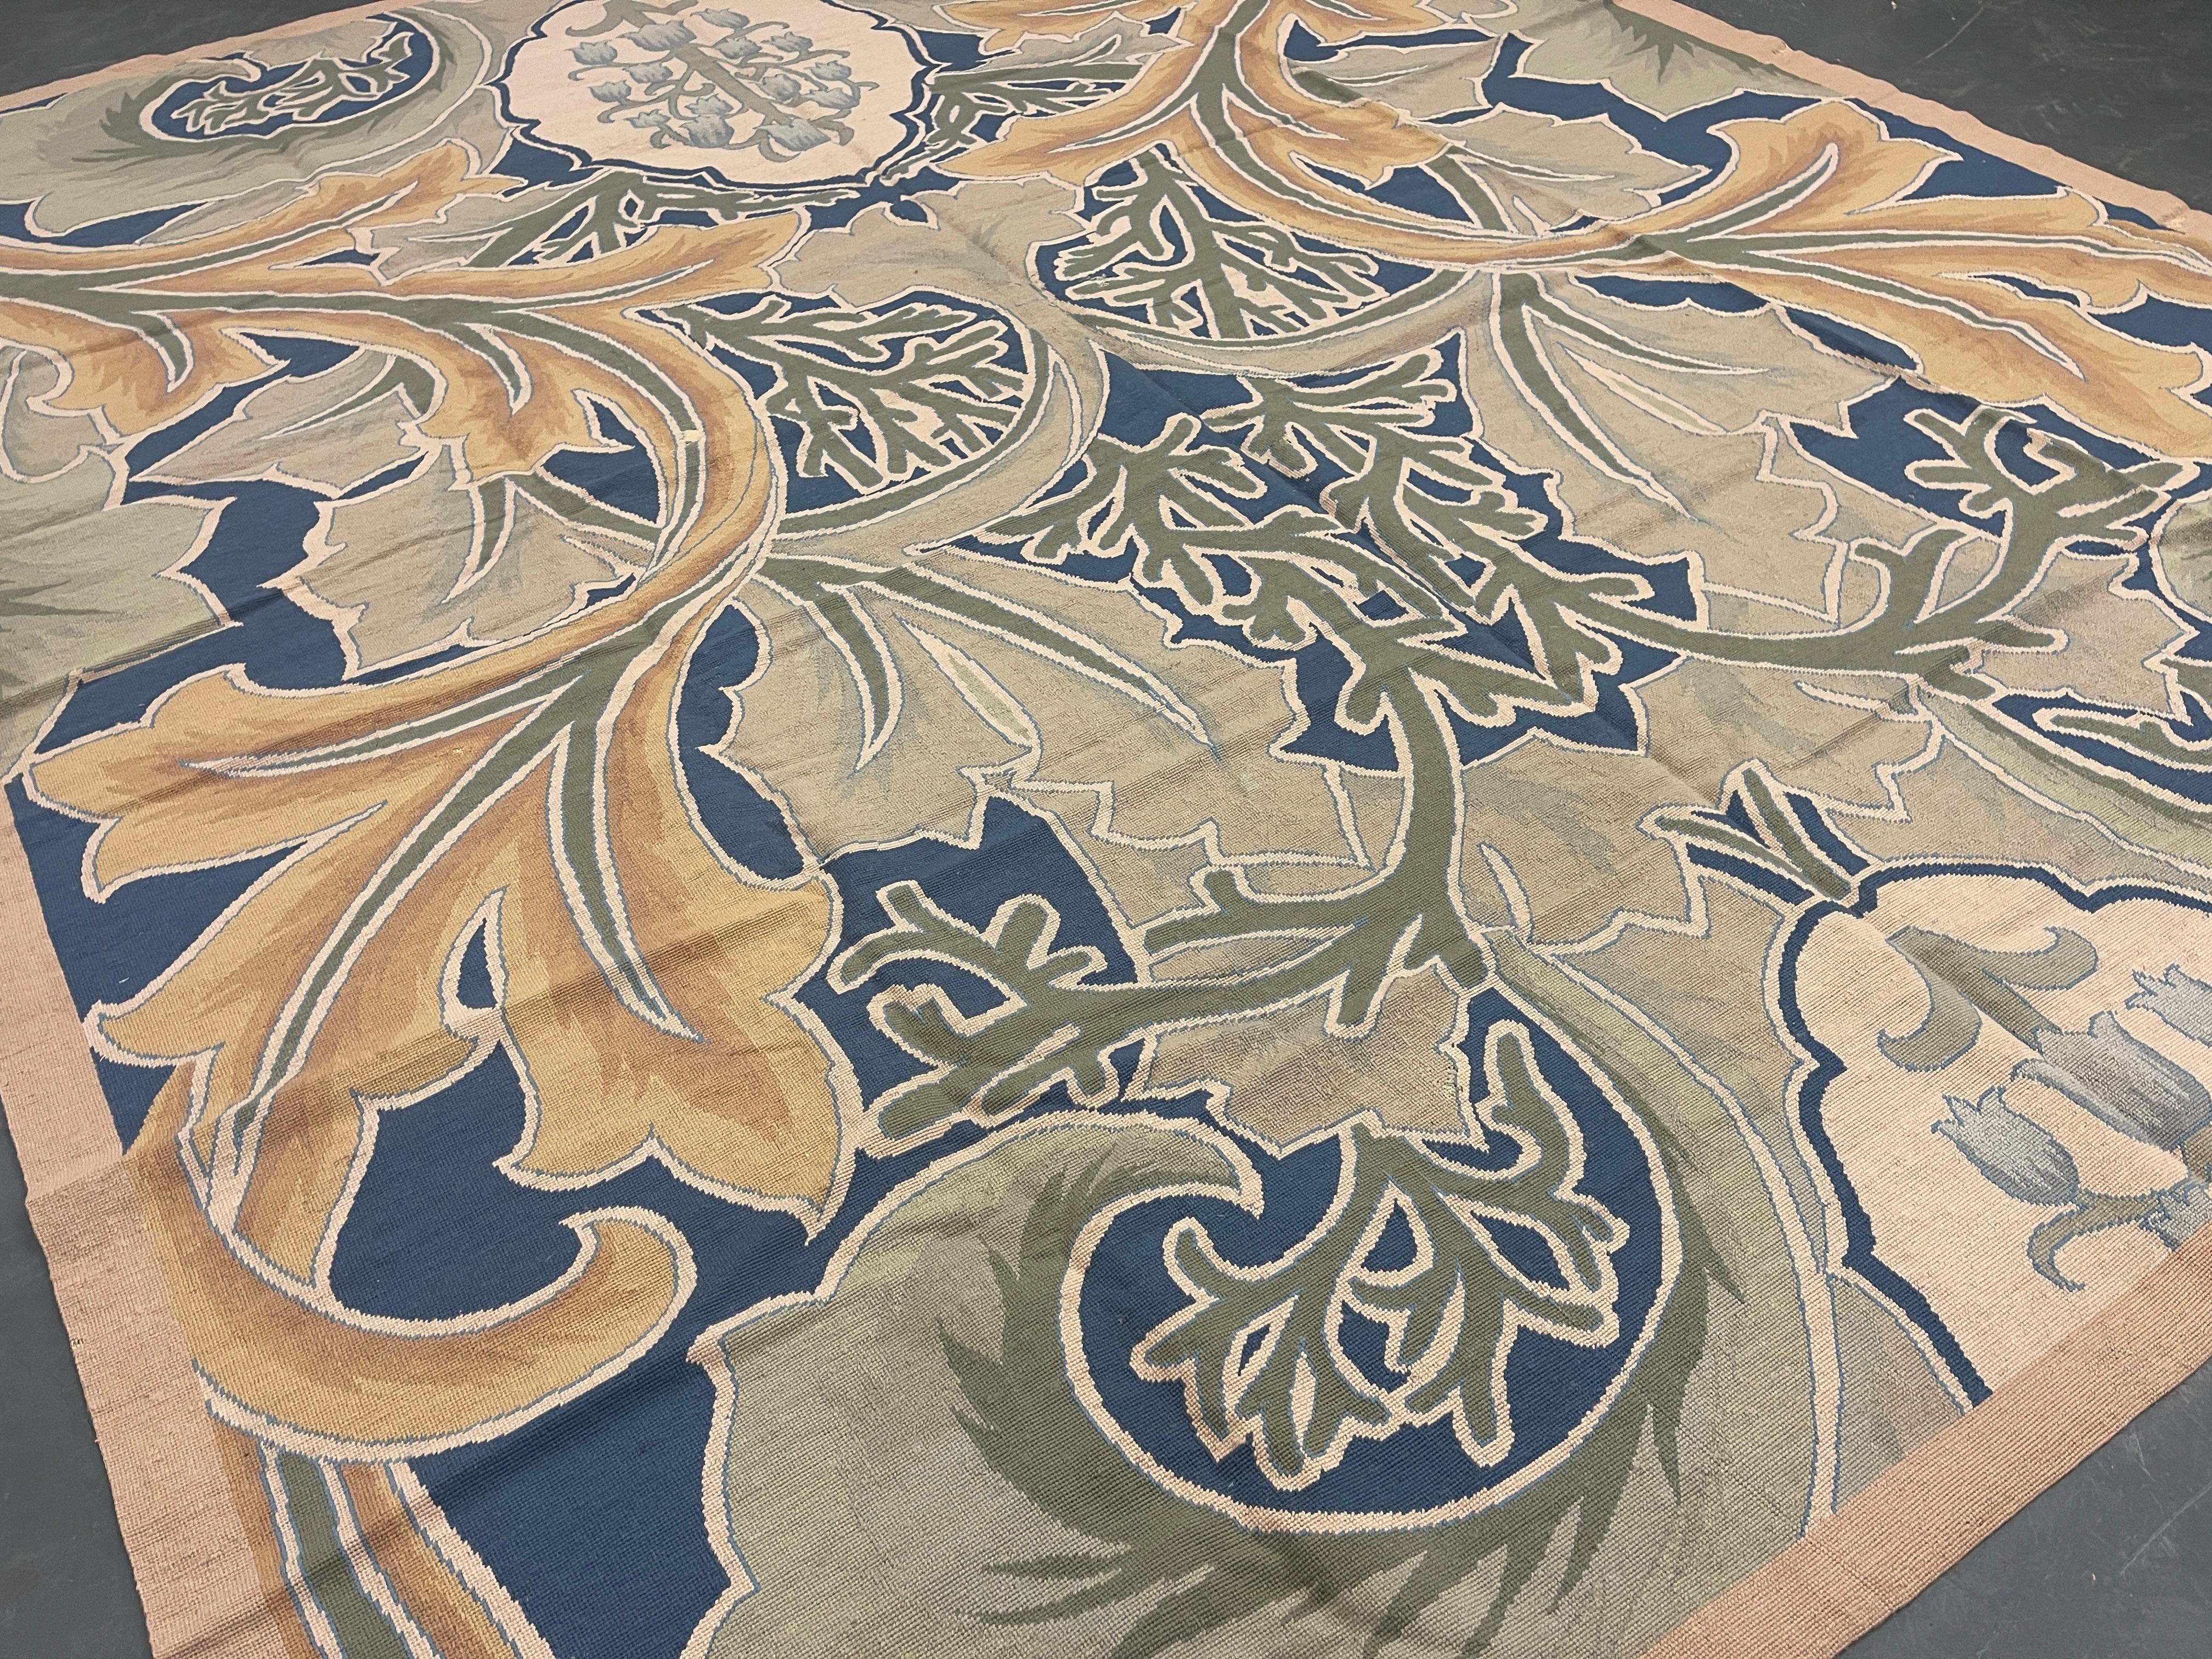 Ce superbe tapis présente un magnifique motif botanique et floral tissé sur un fond ivoire, vert et bleu avec des accents vert crème et ivoire. La couleur et le design de cette pièce élégante en font le tapis de salon idéal.
Ce style de tapis est